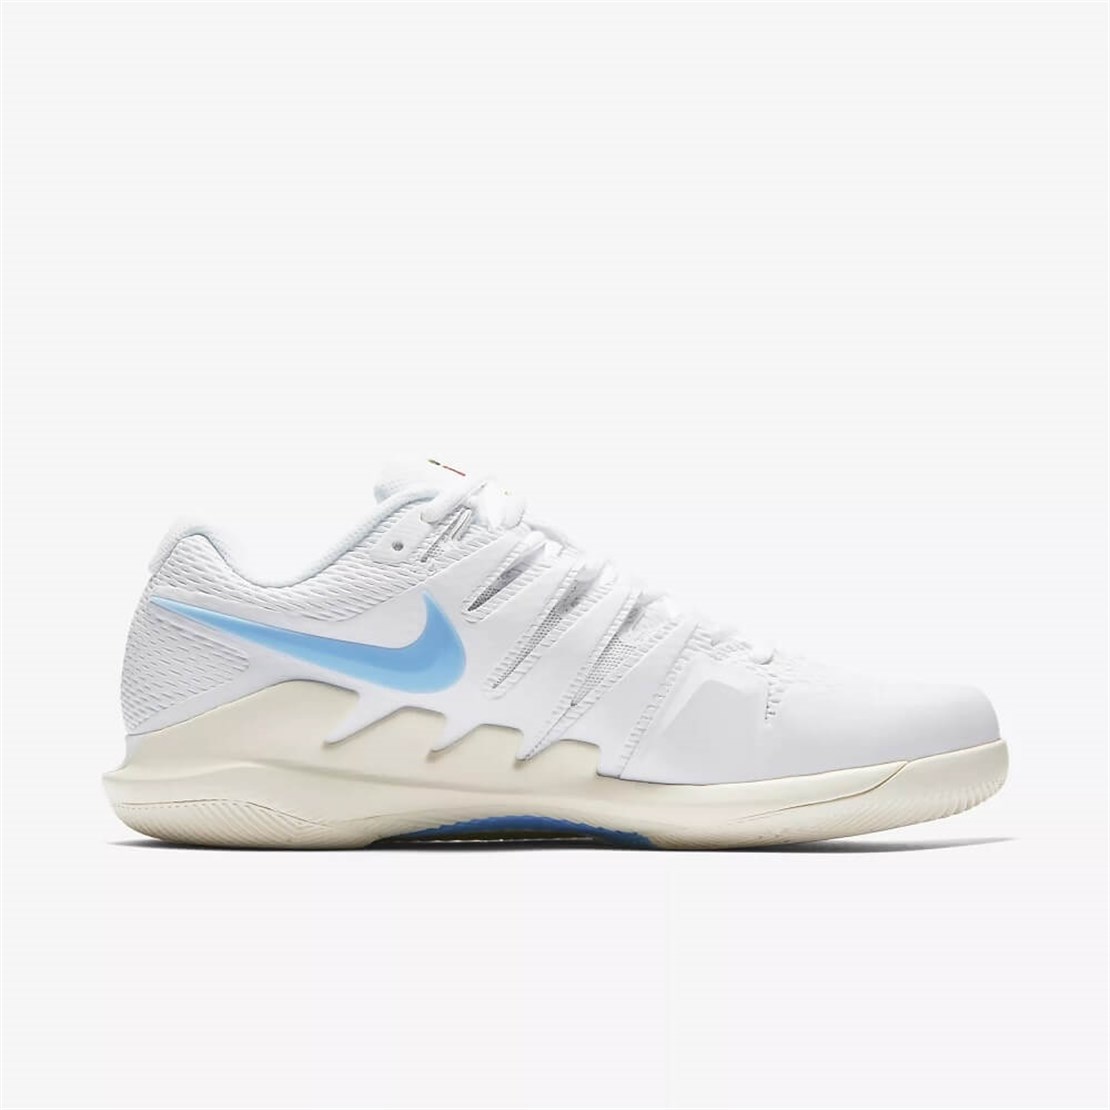 Nike Air Zoom Vapor X Beyaz/Buz Mavisi | Erkek Tenis Ayakkabısı | Merit Spor